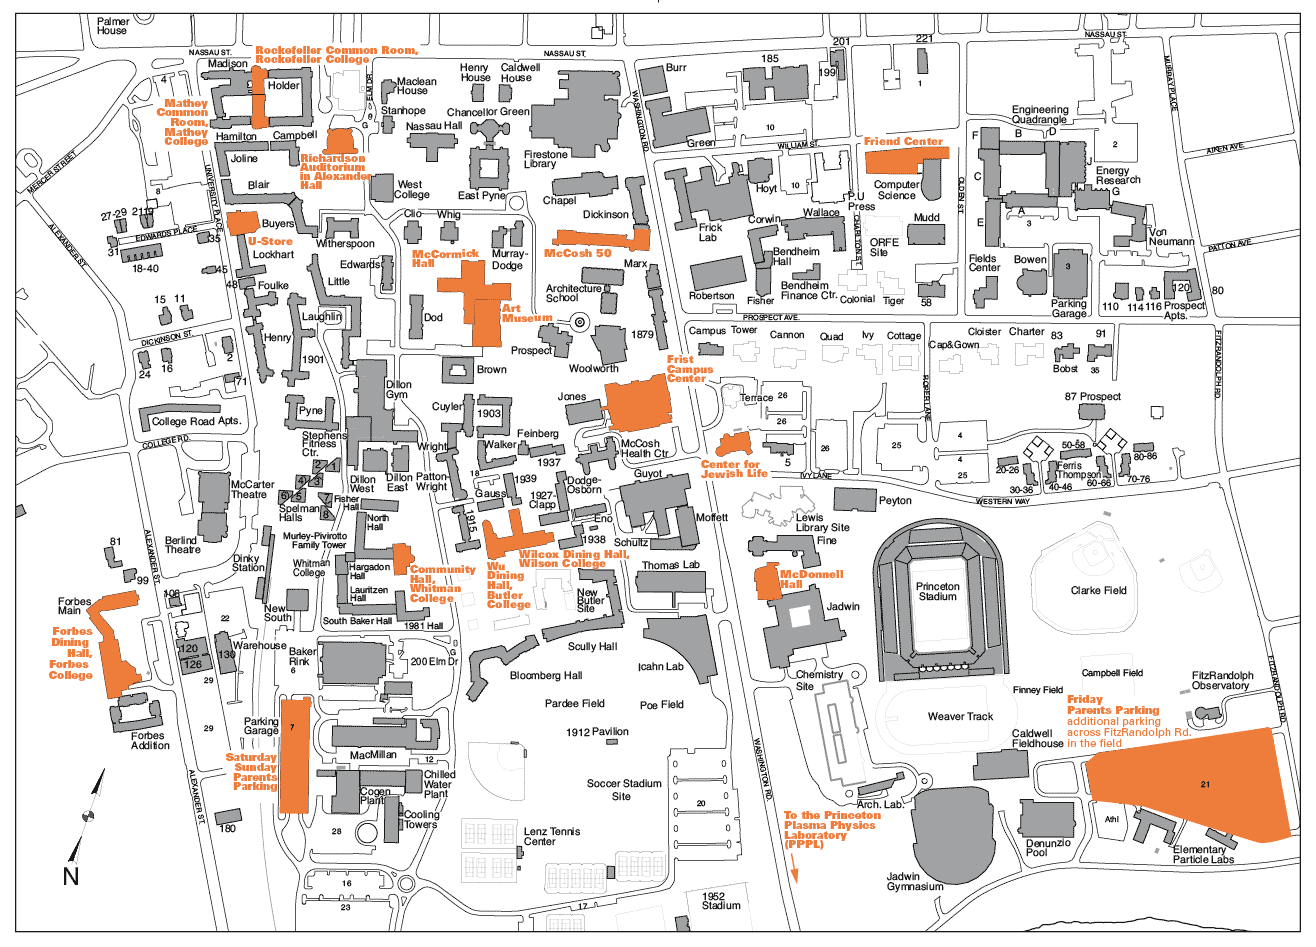 Princeton Campus Map